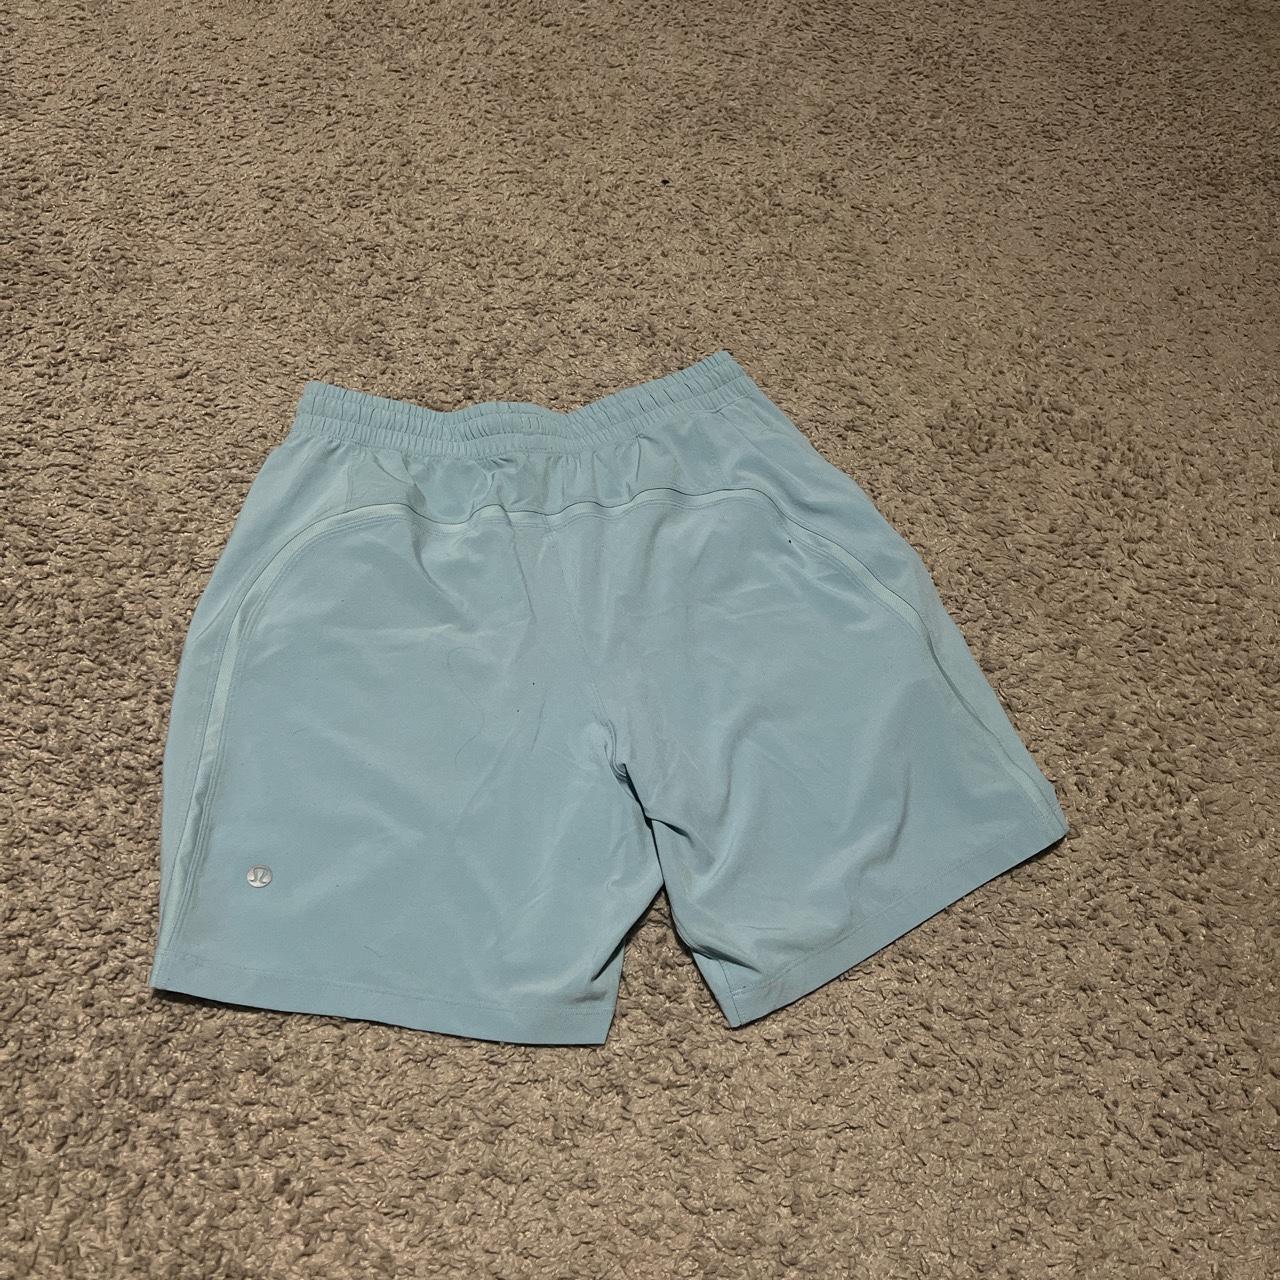 Medium Lululemon Men’s Teal Shorts only worn once - Depop